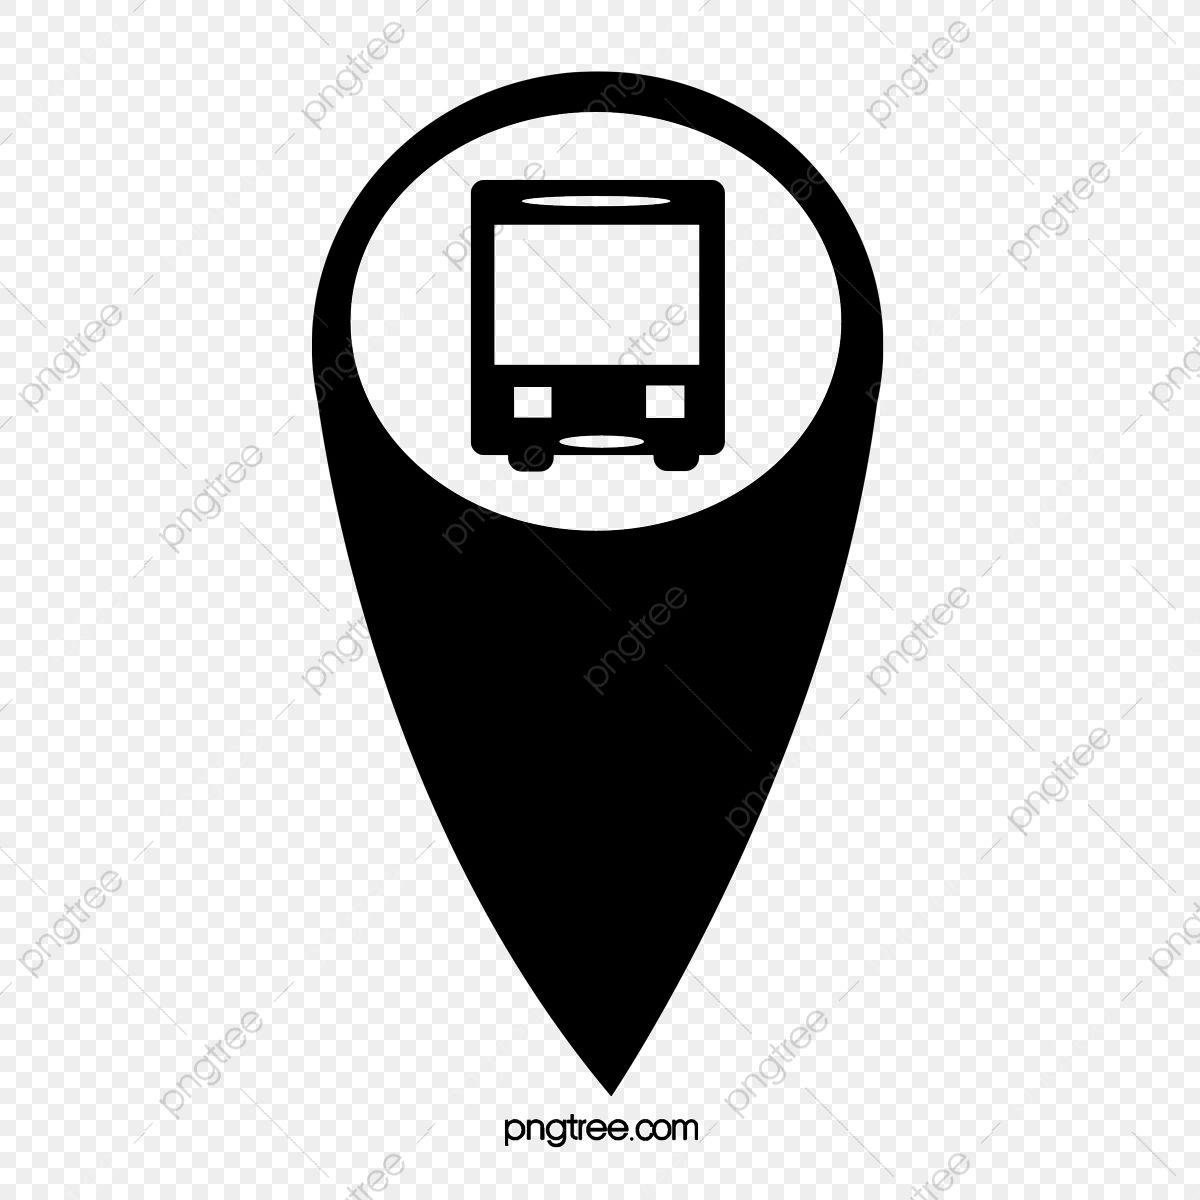 Bus Logo - Bus Positioning Logo, Logo Clipart, Bus Clipart, Bus PNG Transparent ...